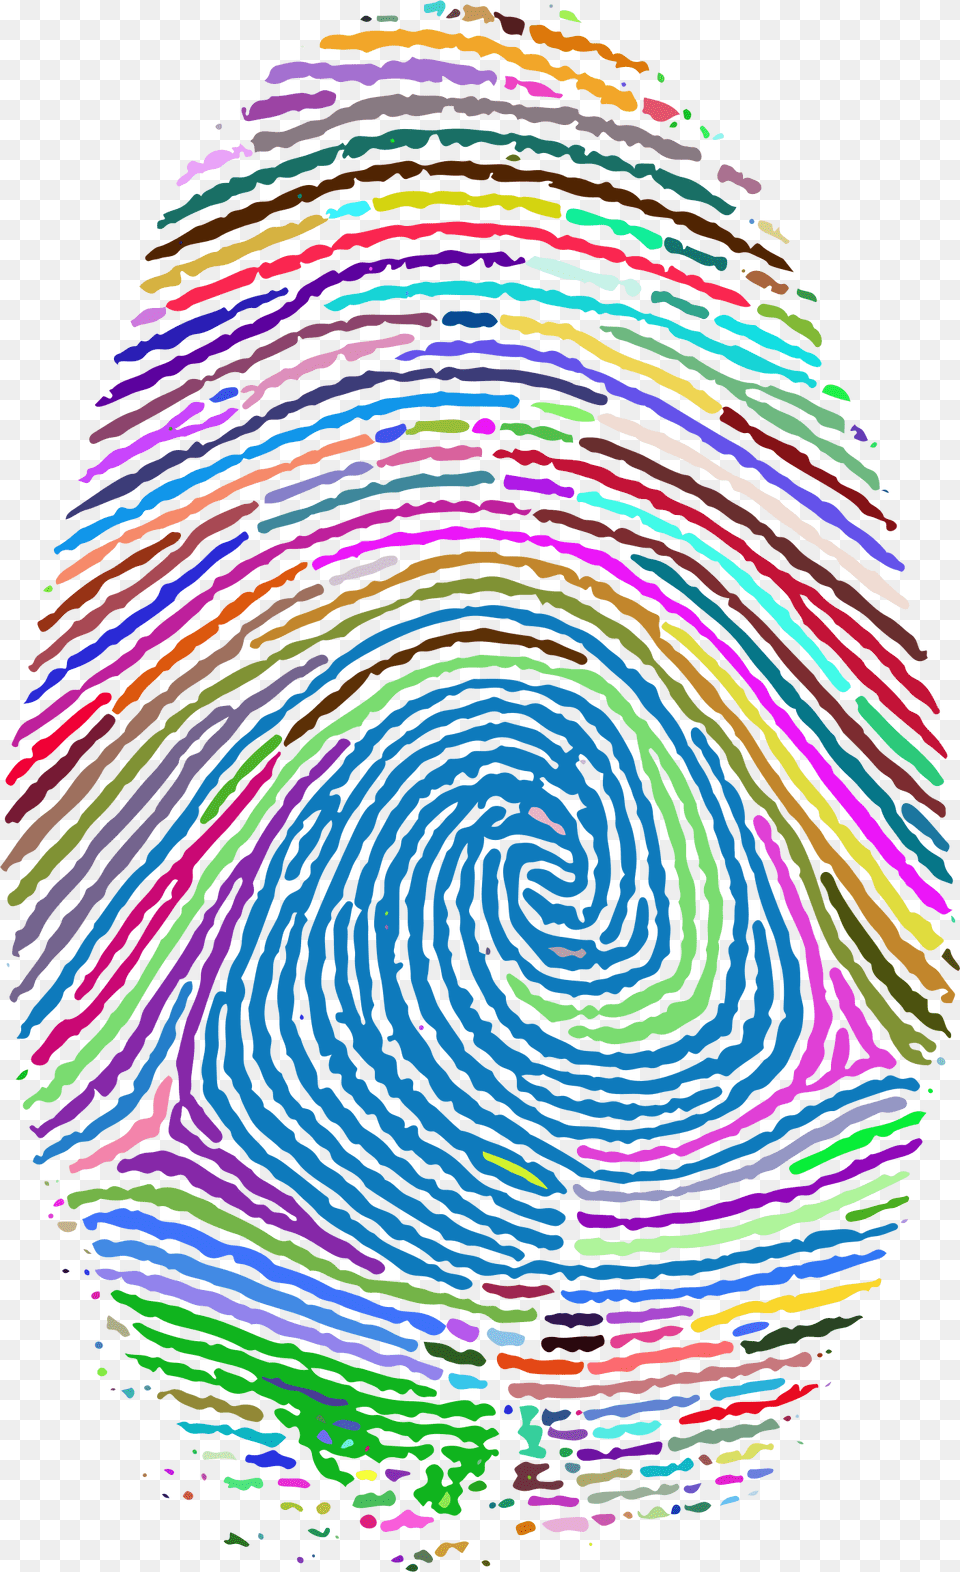 Fingerprint Footprint Clip Art Background Fingerprint, Spiral, Adult, Female, Person Free Transparent Png